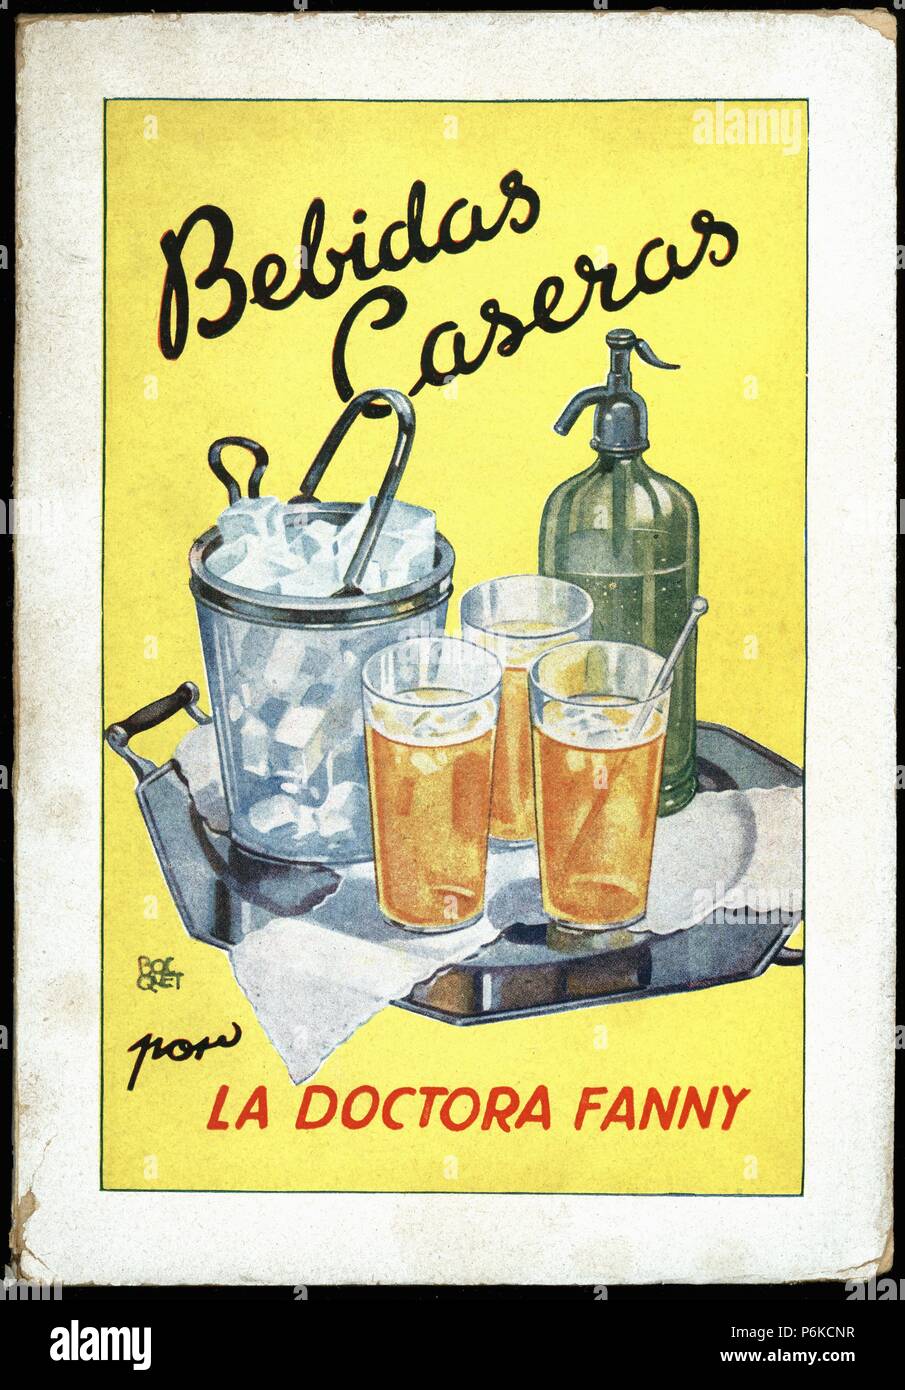 Portada del libro de cocina Bebidas caseras, recetas de la doctora Fanny. Barcelone, 1930. Banque D'Images